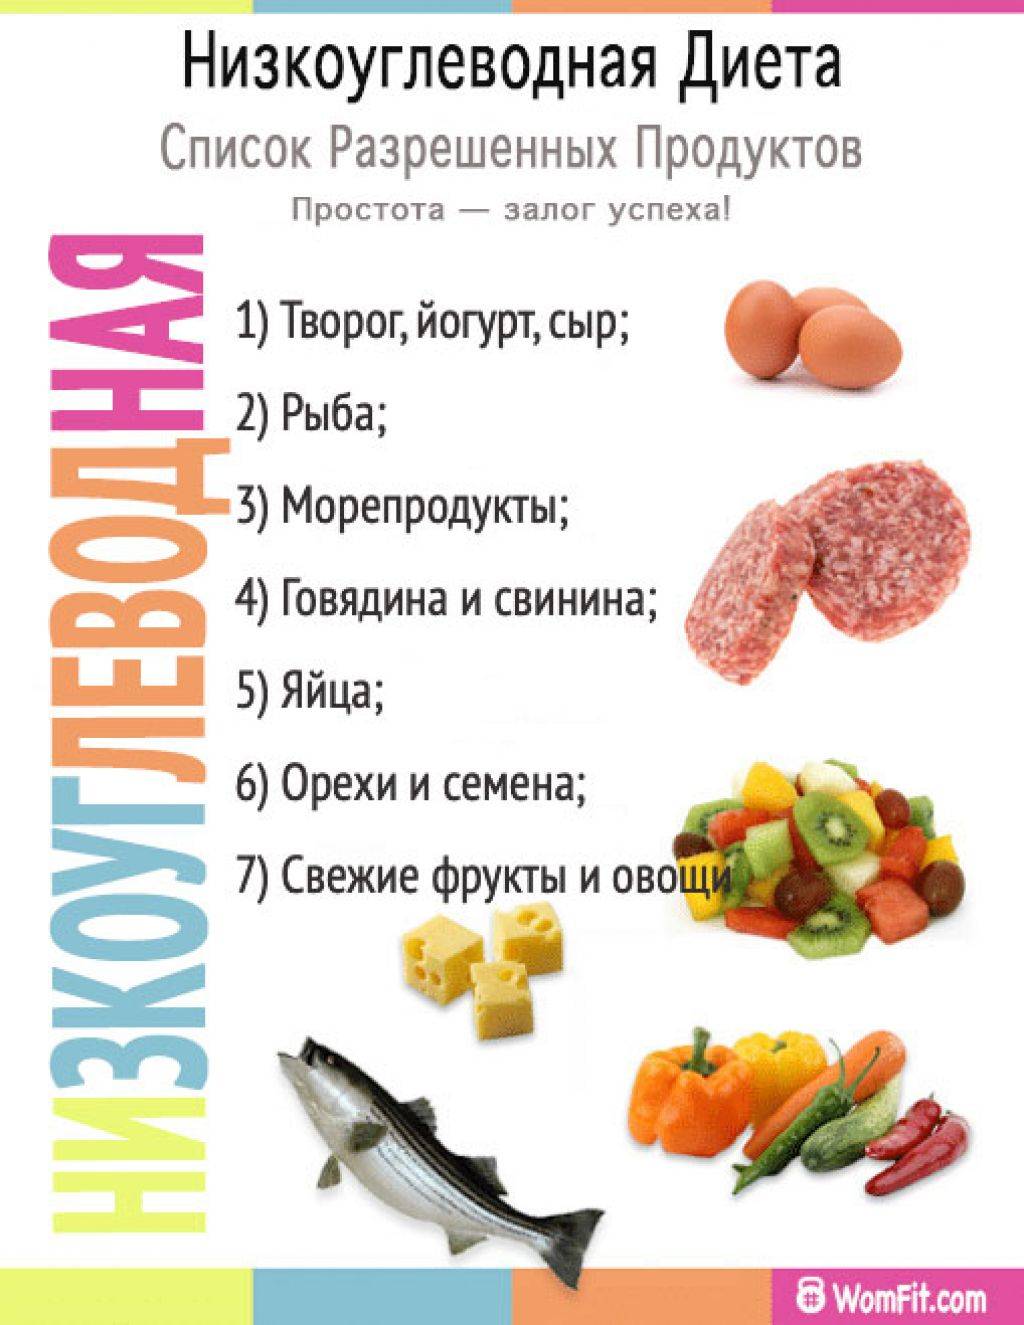 Низкоуглеводная диета меню на неделю, рецепты таблица продуктов